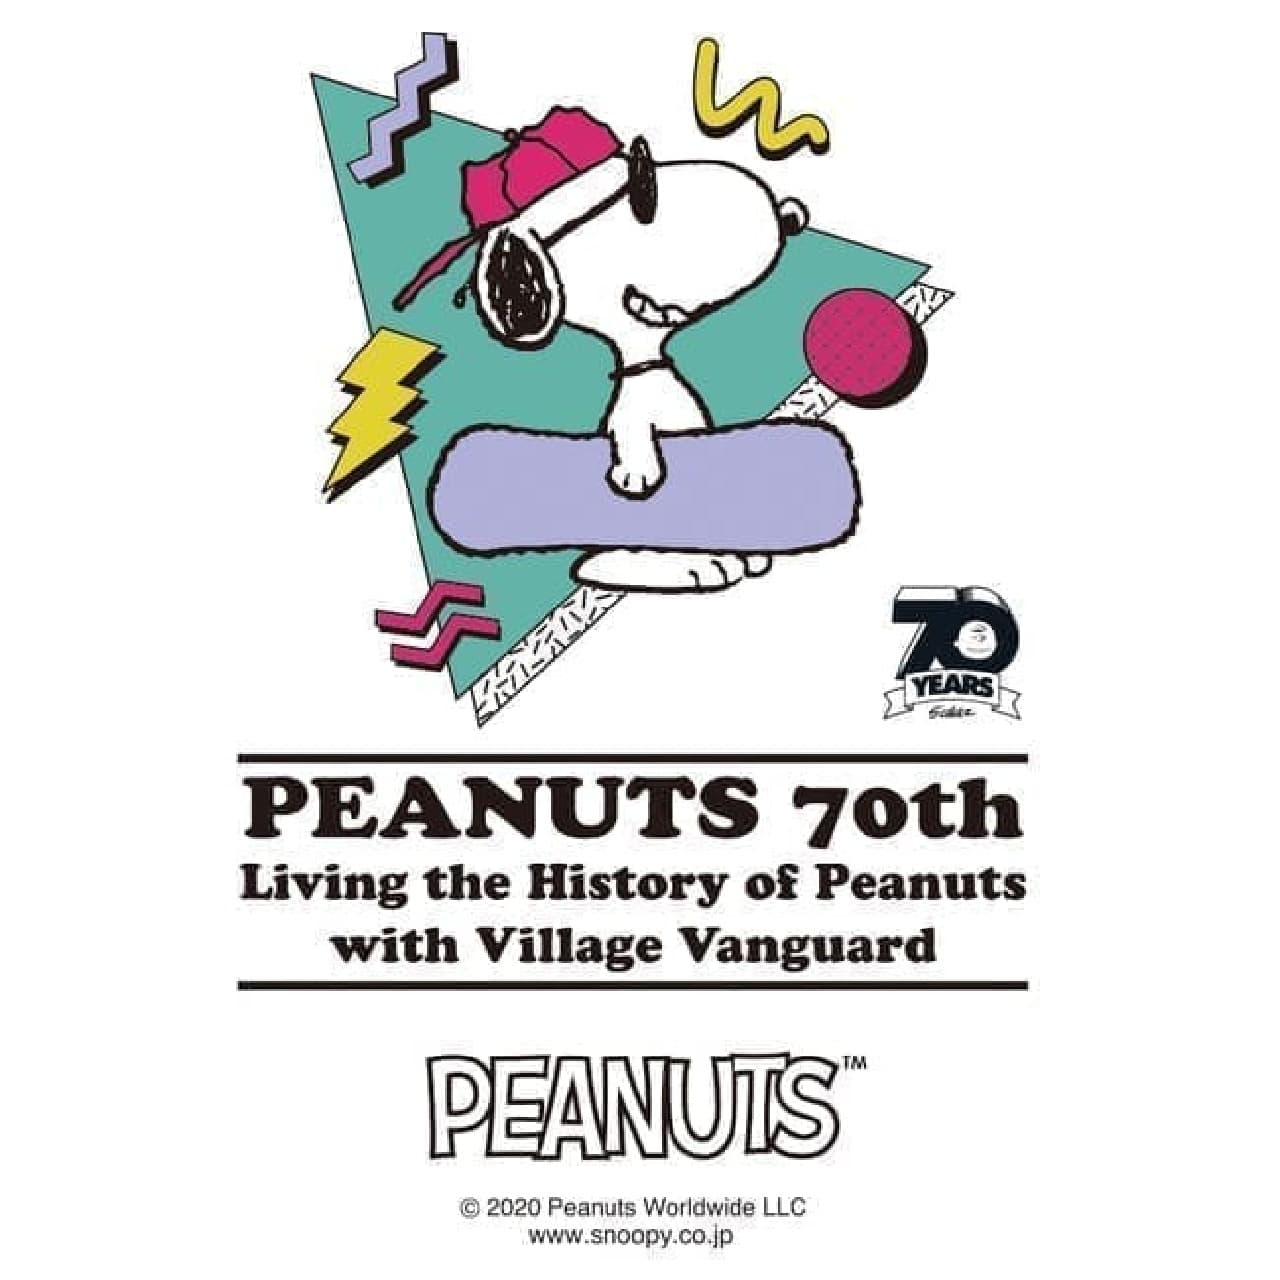 ヴィレヴァンが「PEANUTS」70周年記念フェア -- レトロな生活雑貨や衣類など